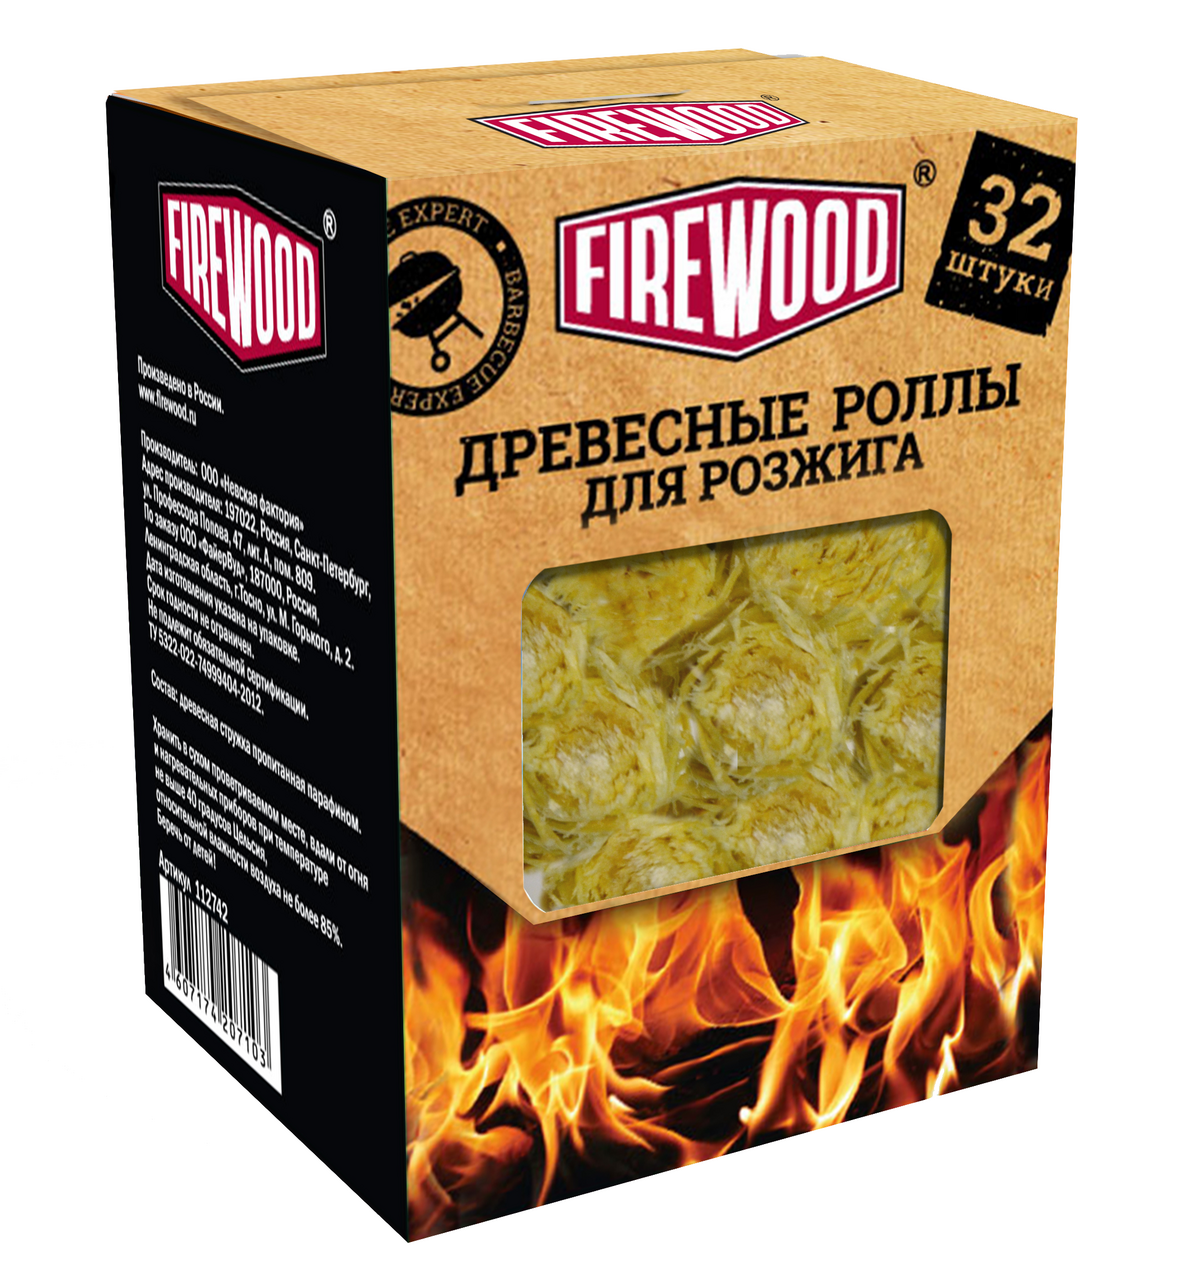  для розжига Firewood 32шт  с доставкой на дом, цены в .